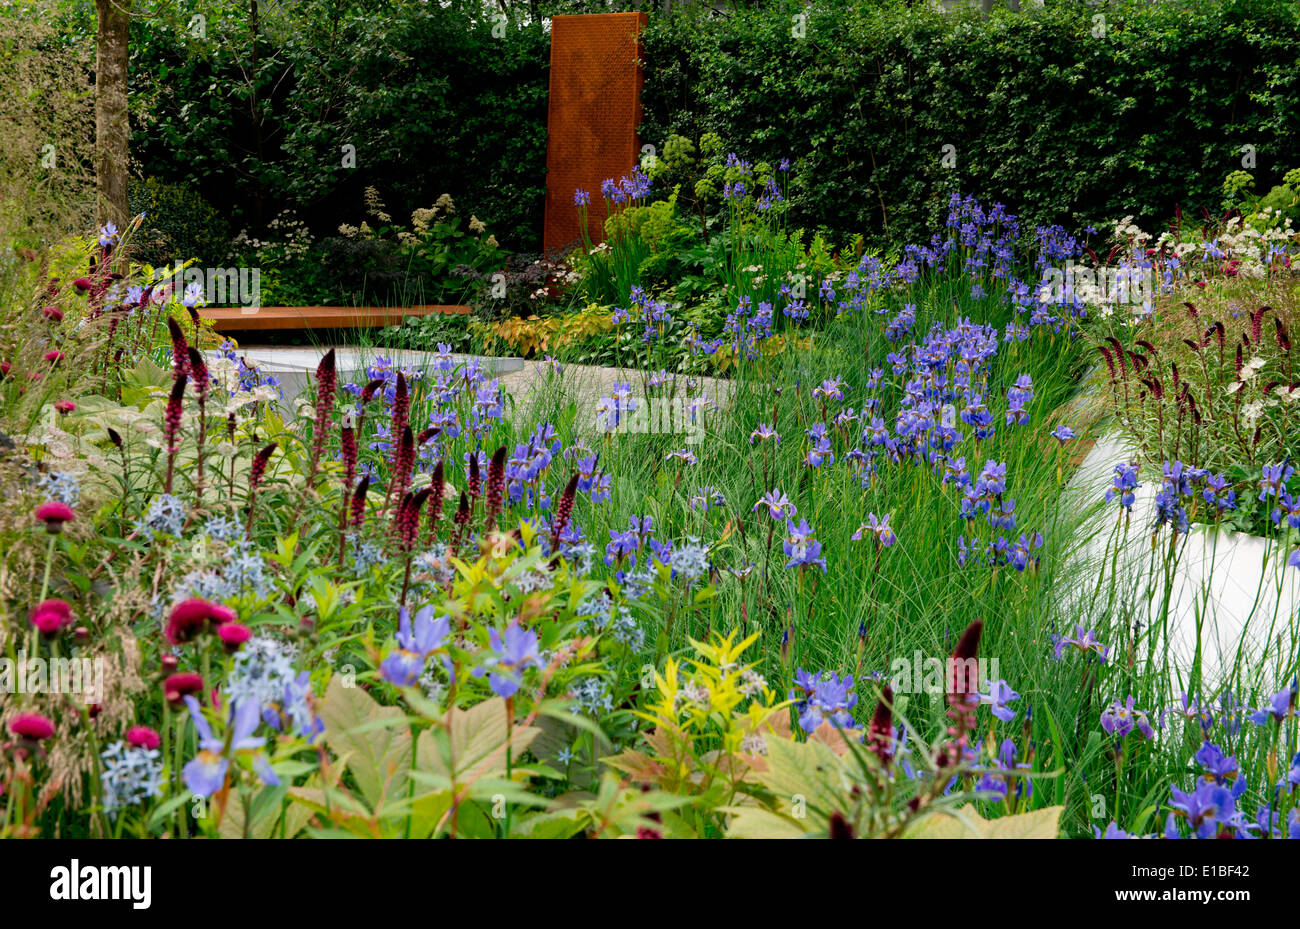 L'Hydropanorama RBC Garden a remporté une médaille d'or conçu par Hugo Bugg au Chelsea Flower Show 2014, Londres, Royaume-Uni Banque D'Images